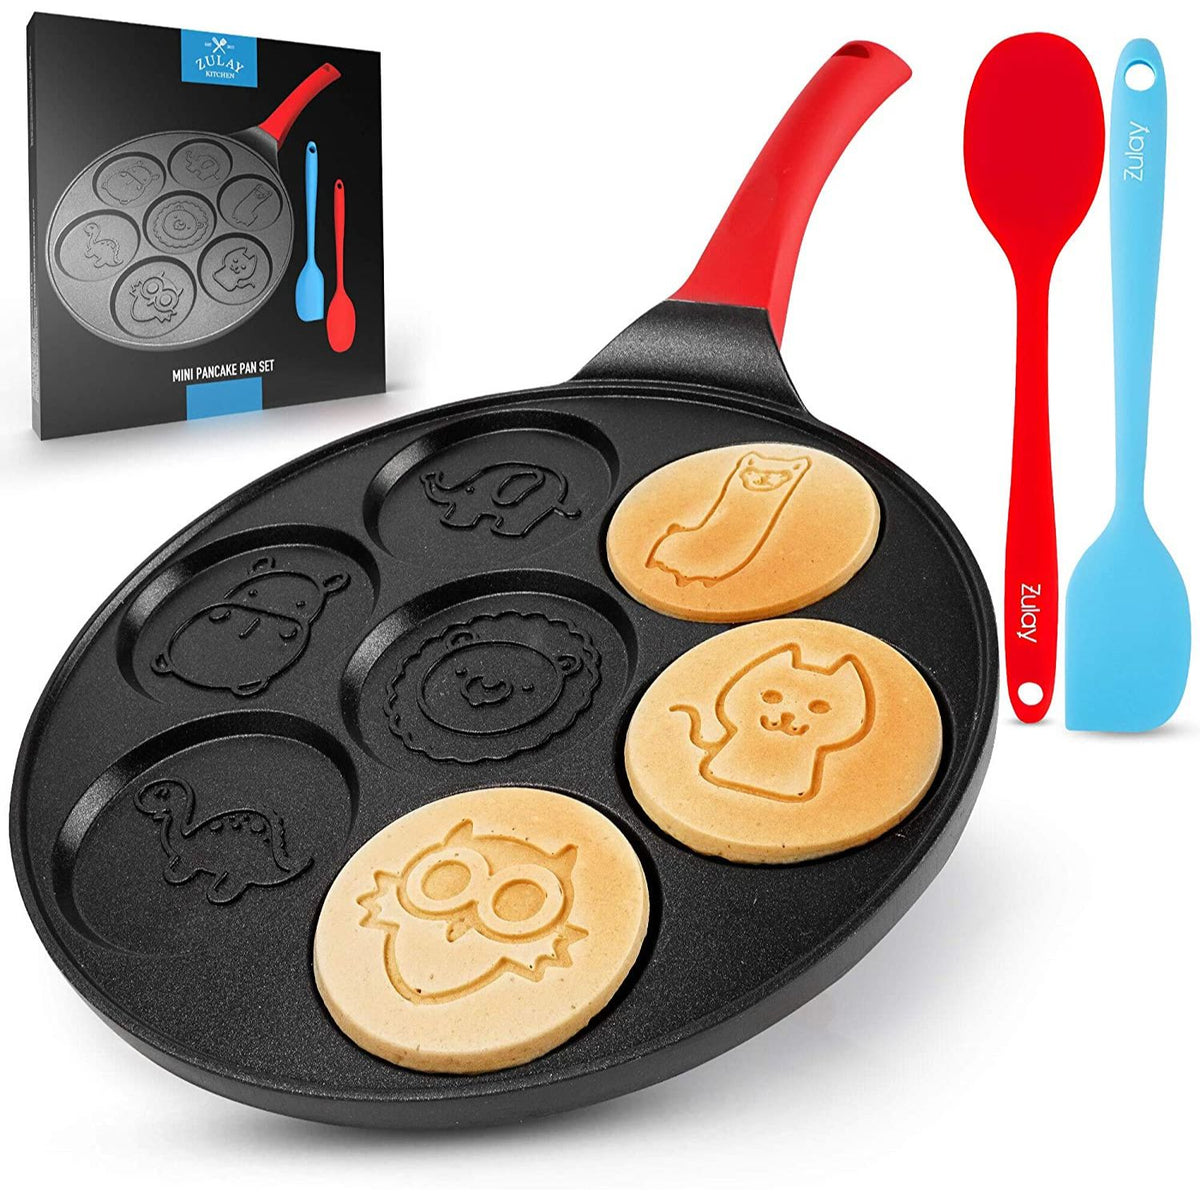 KUTIME BU0995S-3992mn Pancake Pan Pancake Griddle with 7 Flapjack